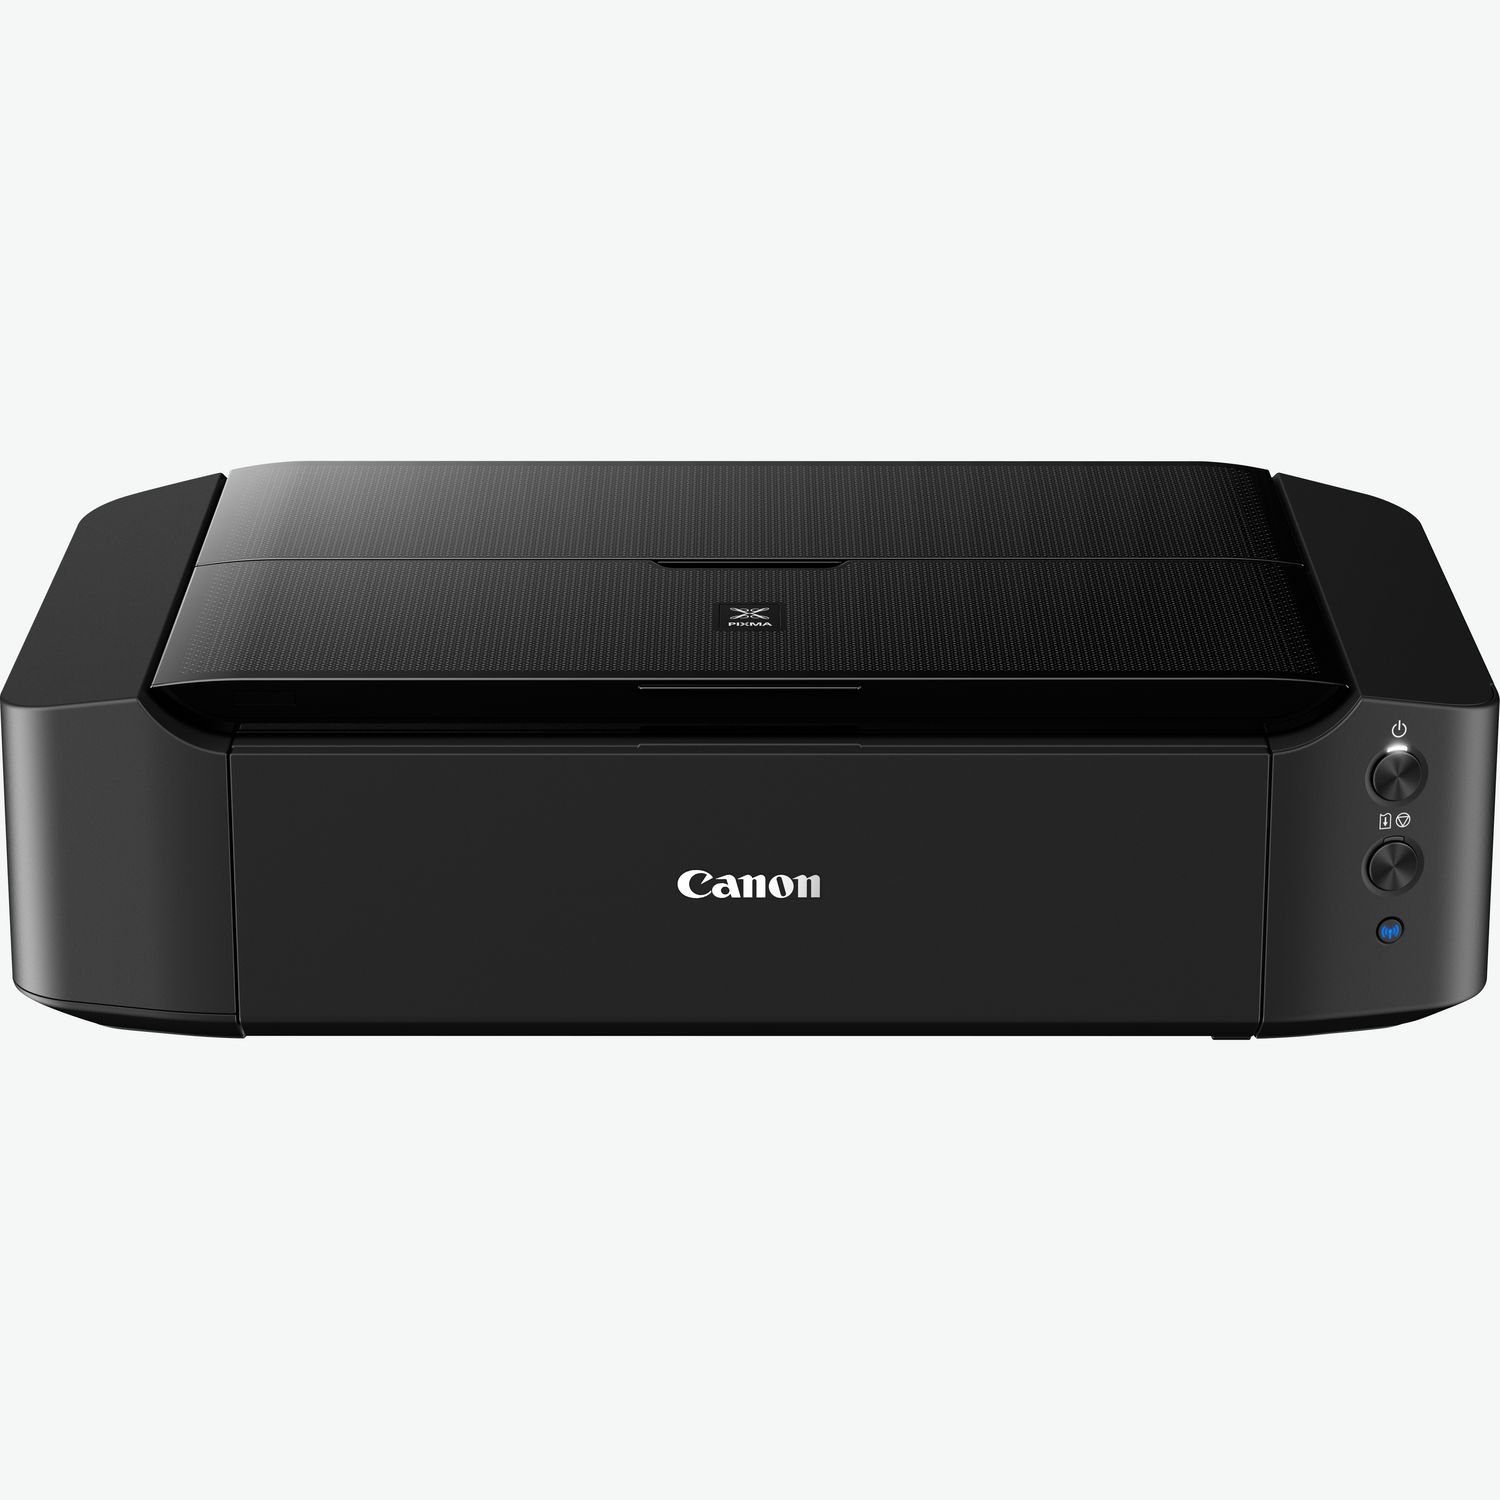 Canon Pixma iP7250 Stampante Fotografica Inkjet, Pentacromia, Wi-Fi, Nero, Prezzi e Offerte